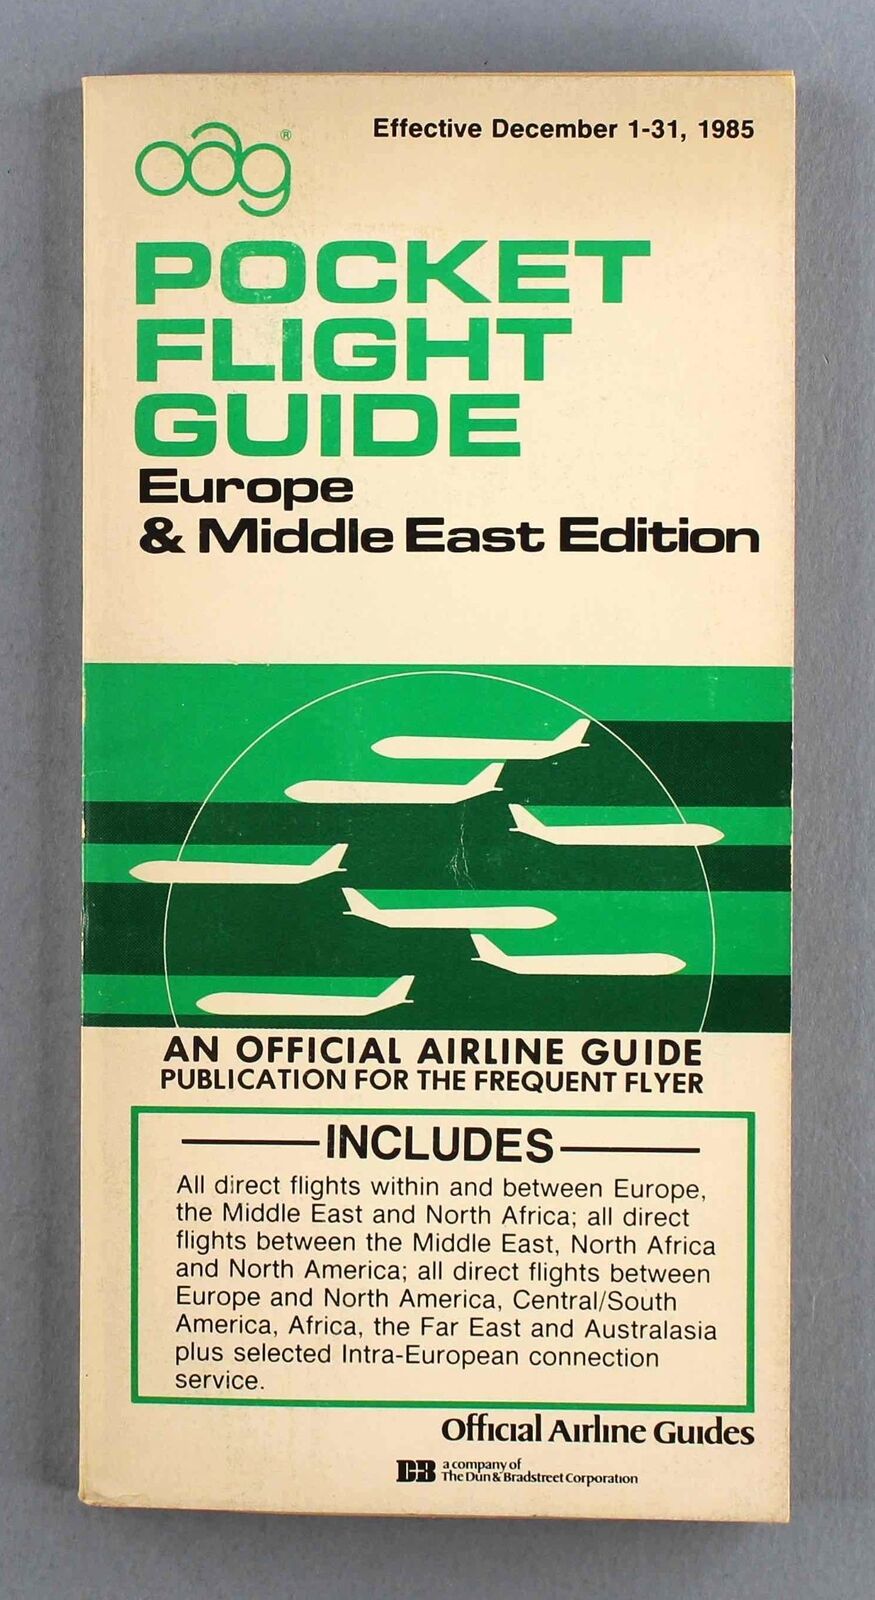 OAG EUROPE & MIDDLE EAST POCKET FLIGHT GUIDE DECEMBER 1985 AIRLINE TIMETABLE